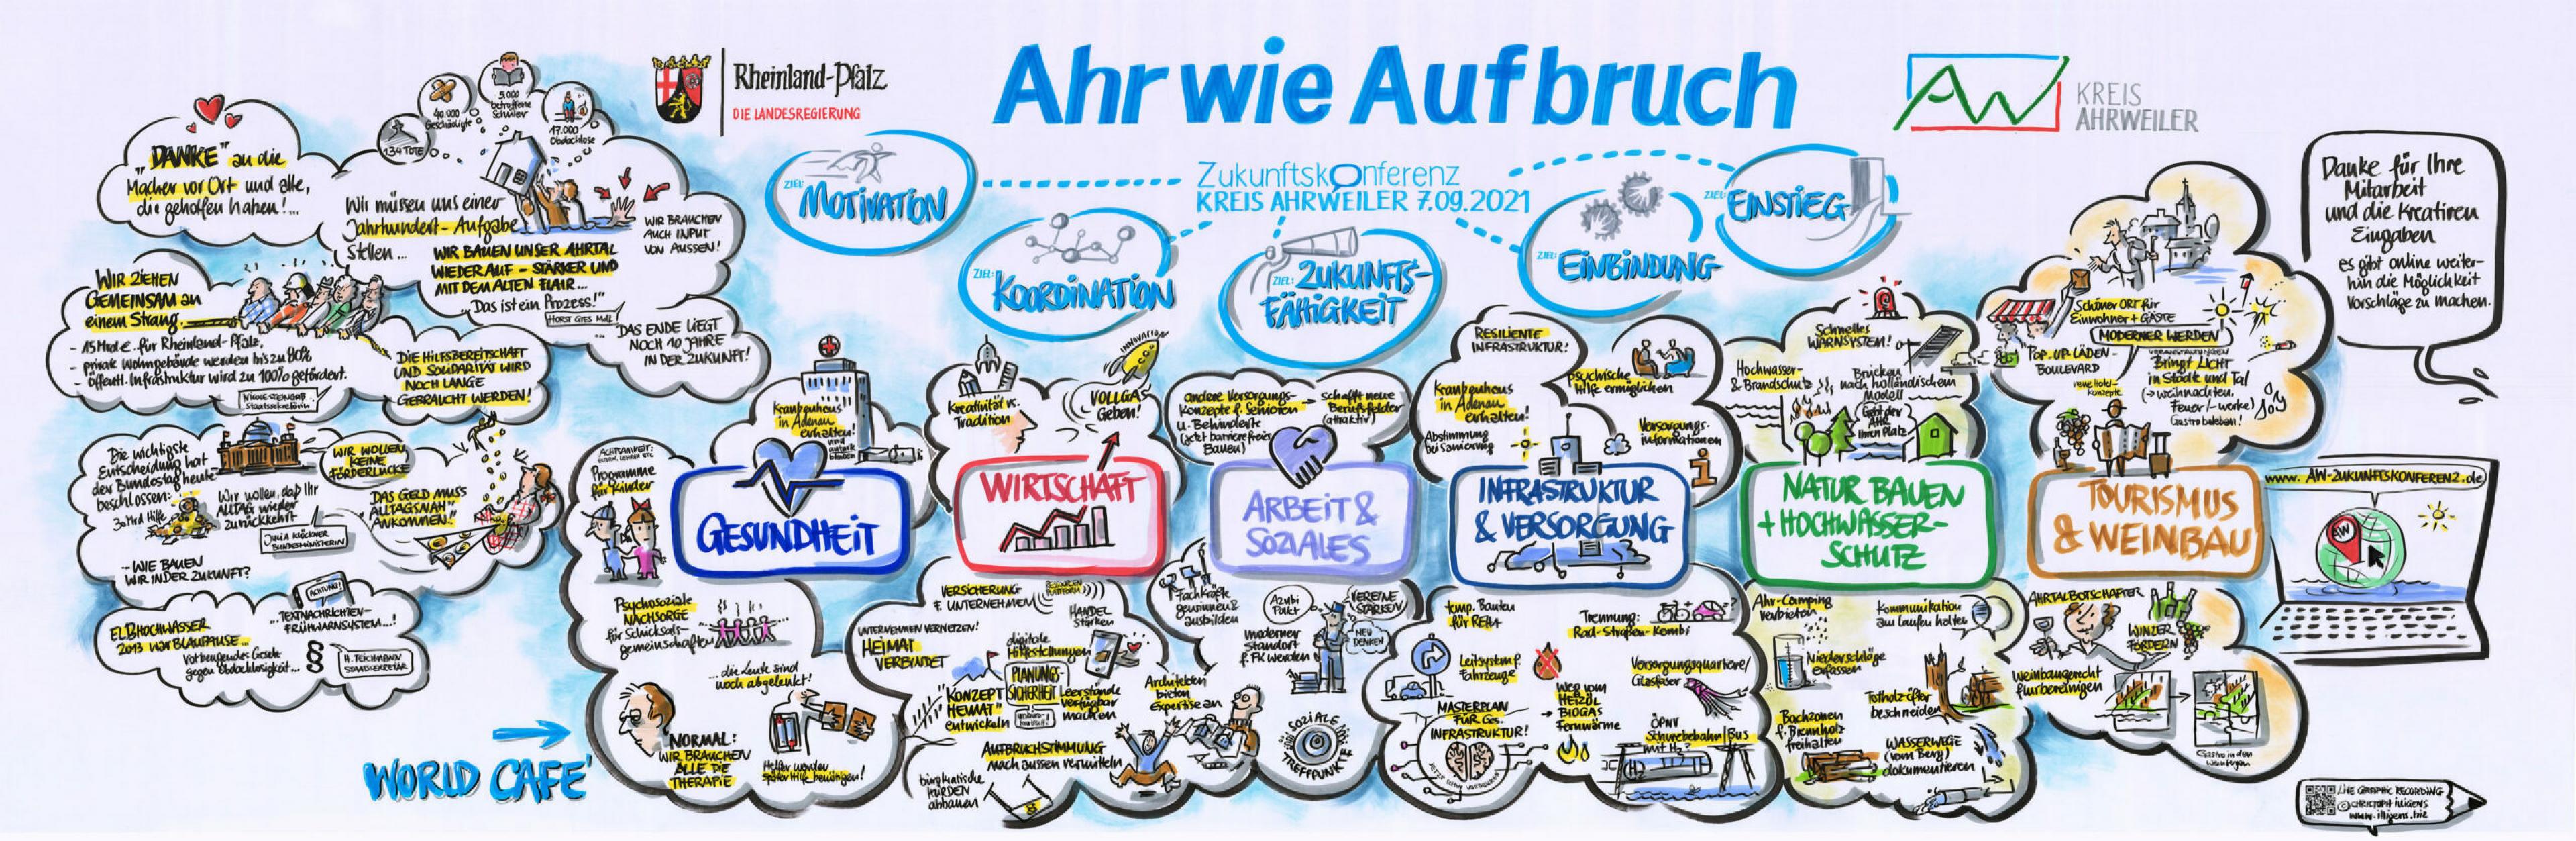 Die Ergebnisse der ersten Zukunftskonferenz für den Kreis Ahrweiler am 7. September 2021 wurden live vom Grafiker Christoph Illigens aufgezeichnet. Grafik: LIVE GRAPHIC RECORDING ©CHRISTOPH ILLIGENS · WWW.ILLIGENS.BIZ